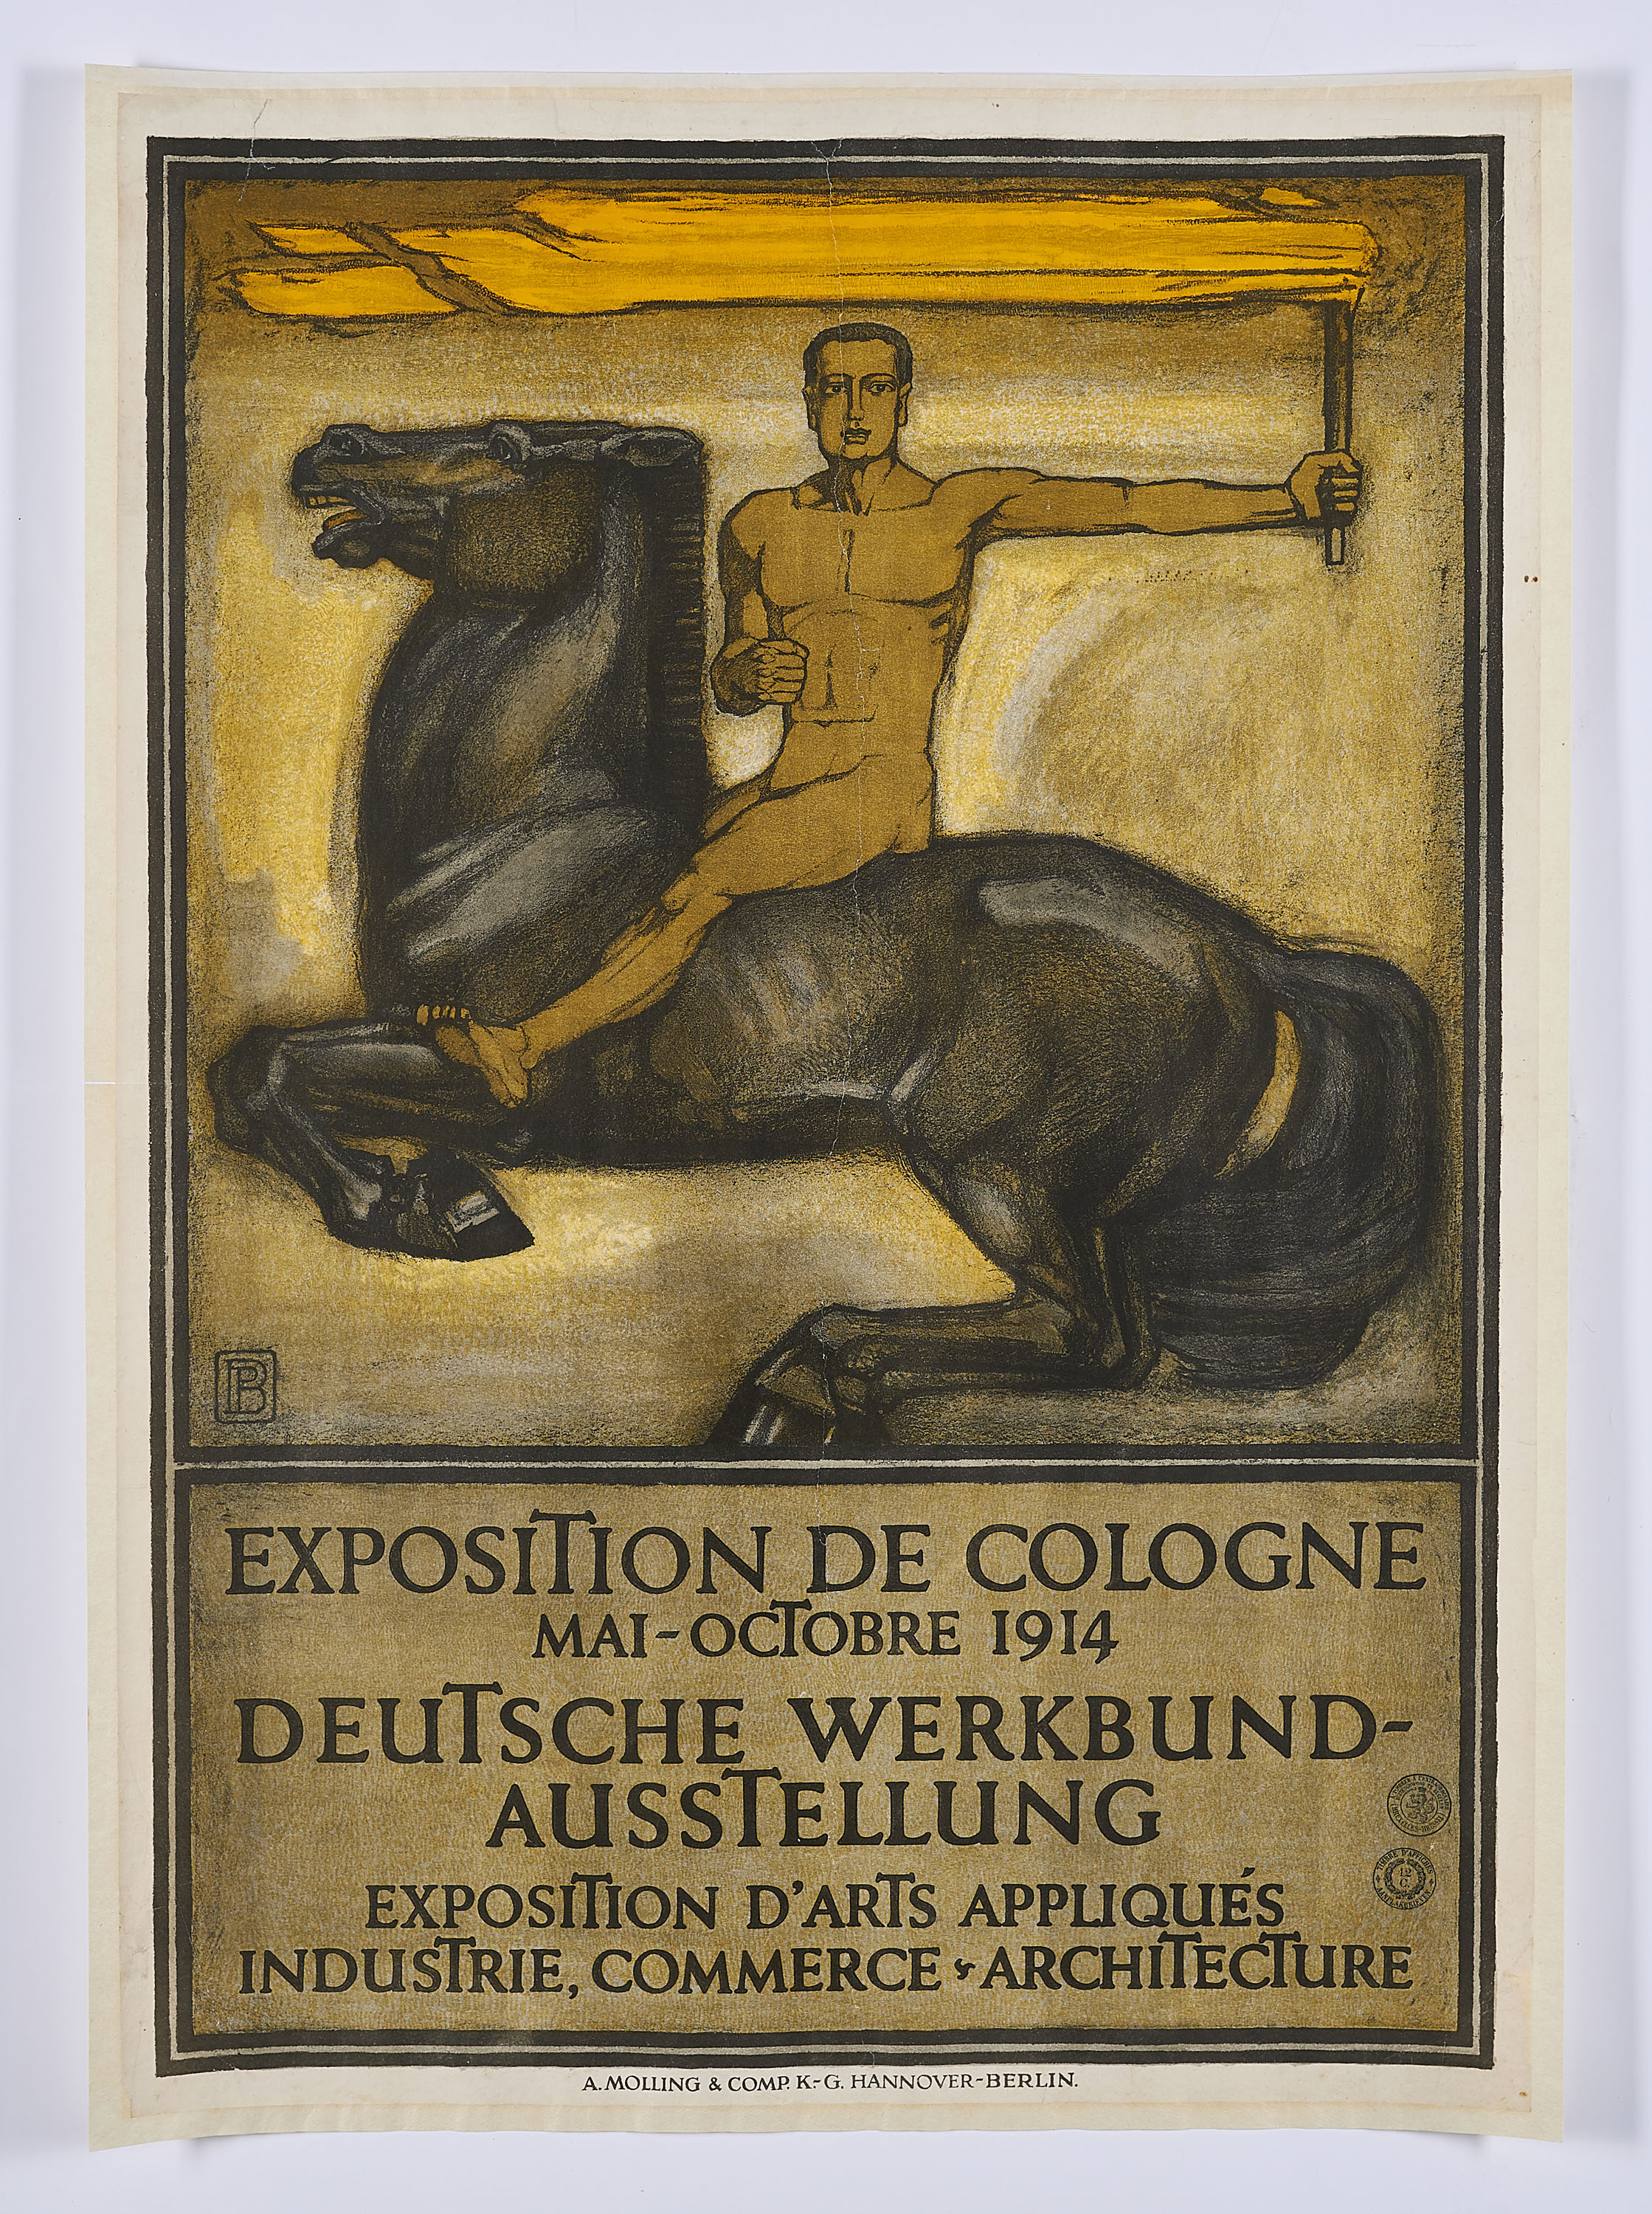 Peter Behrens - Plakat fuer die deutsche Werkbund-Ausstellung in Koeln 1914, 70020-8, Van Ham Kunstauktionen